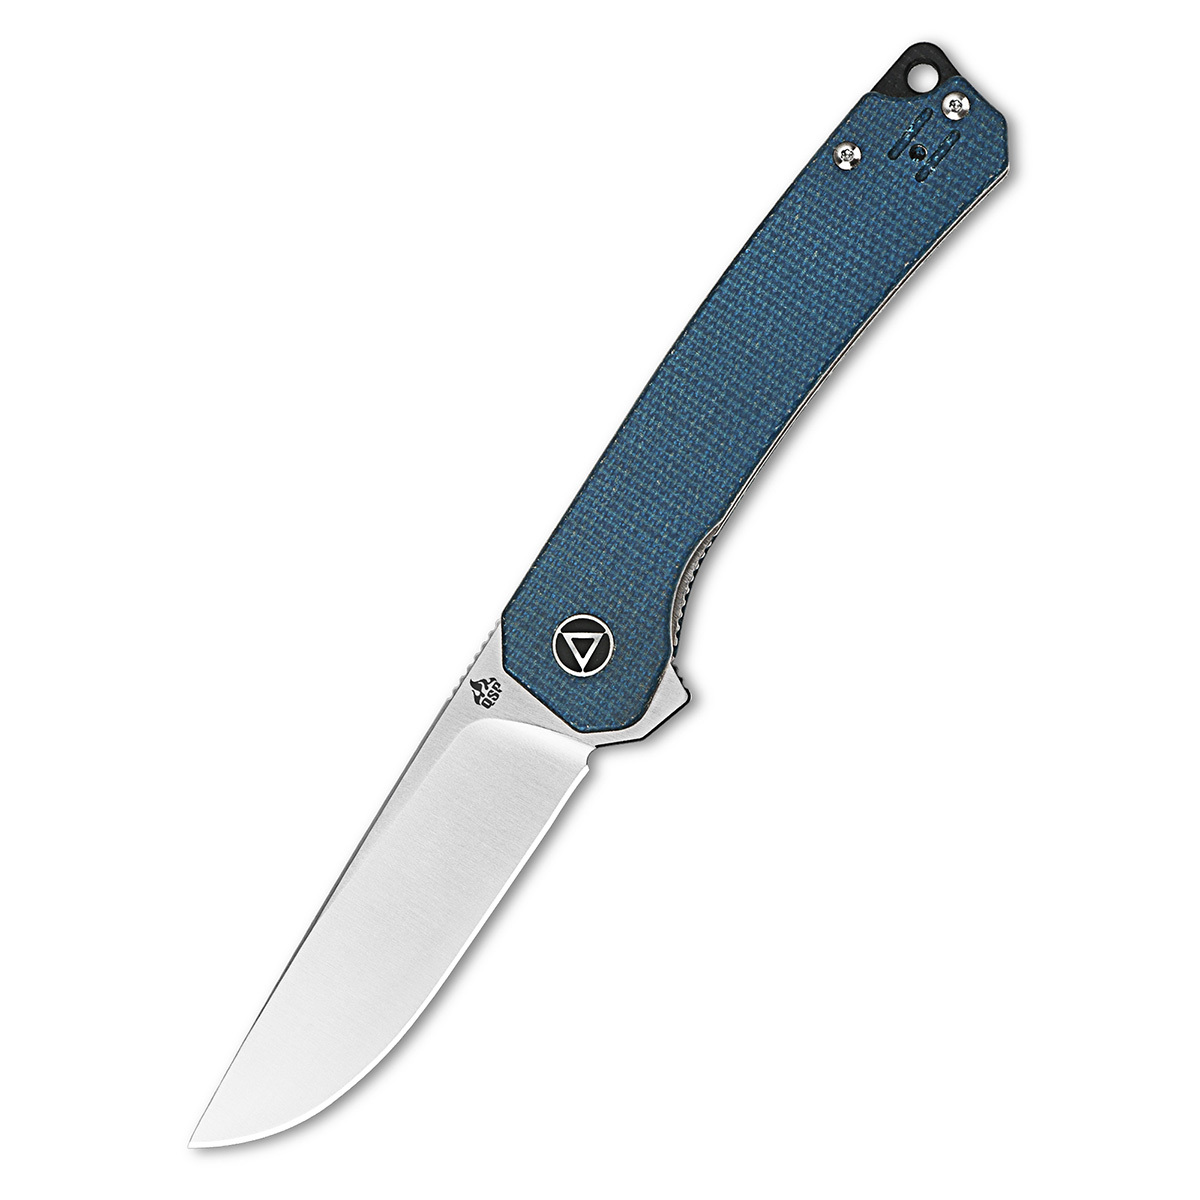 Складной нож QSP Osprey, сталь 14C28N, рукоять микарта, синий, Бренды, QSP